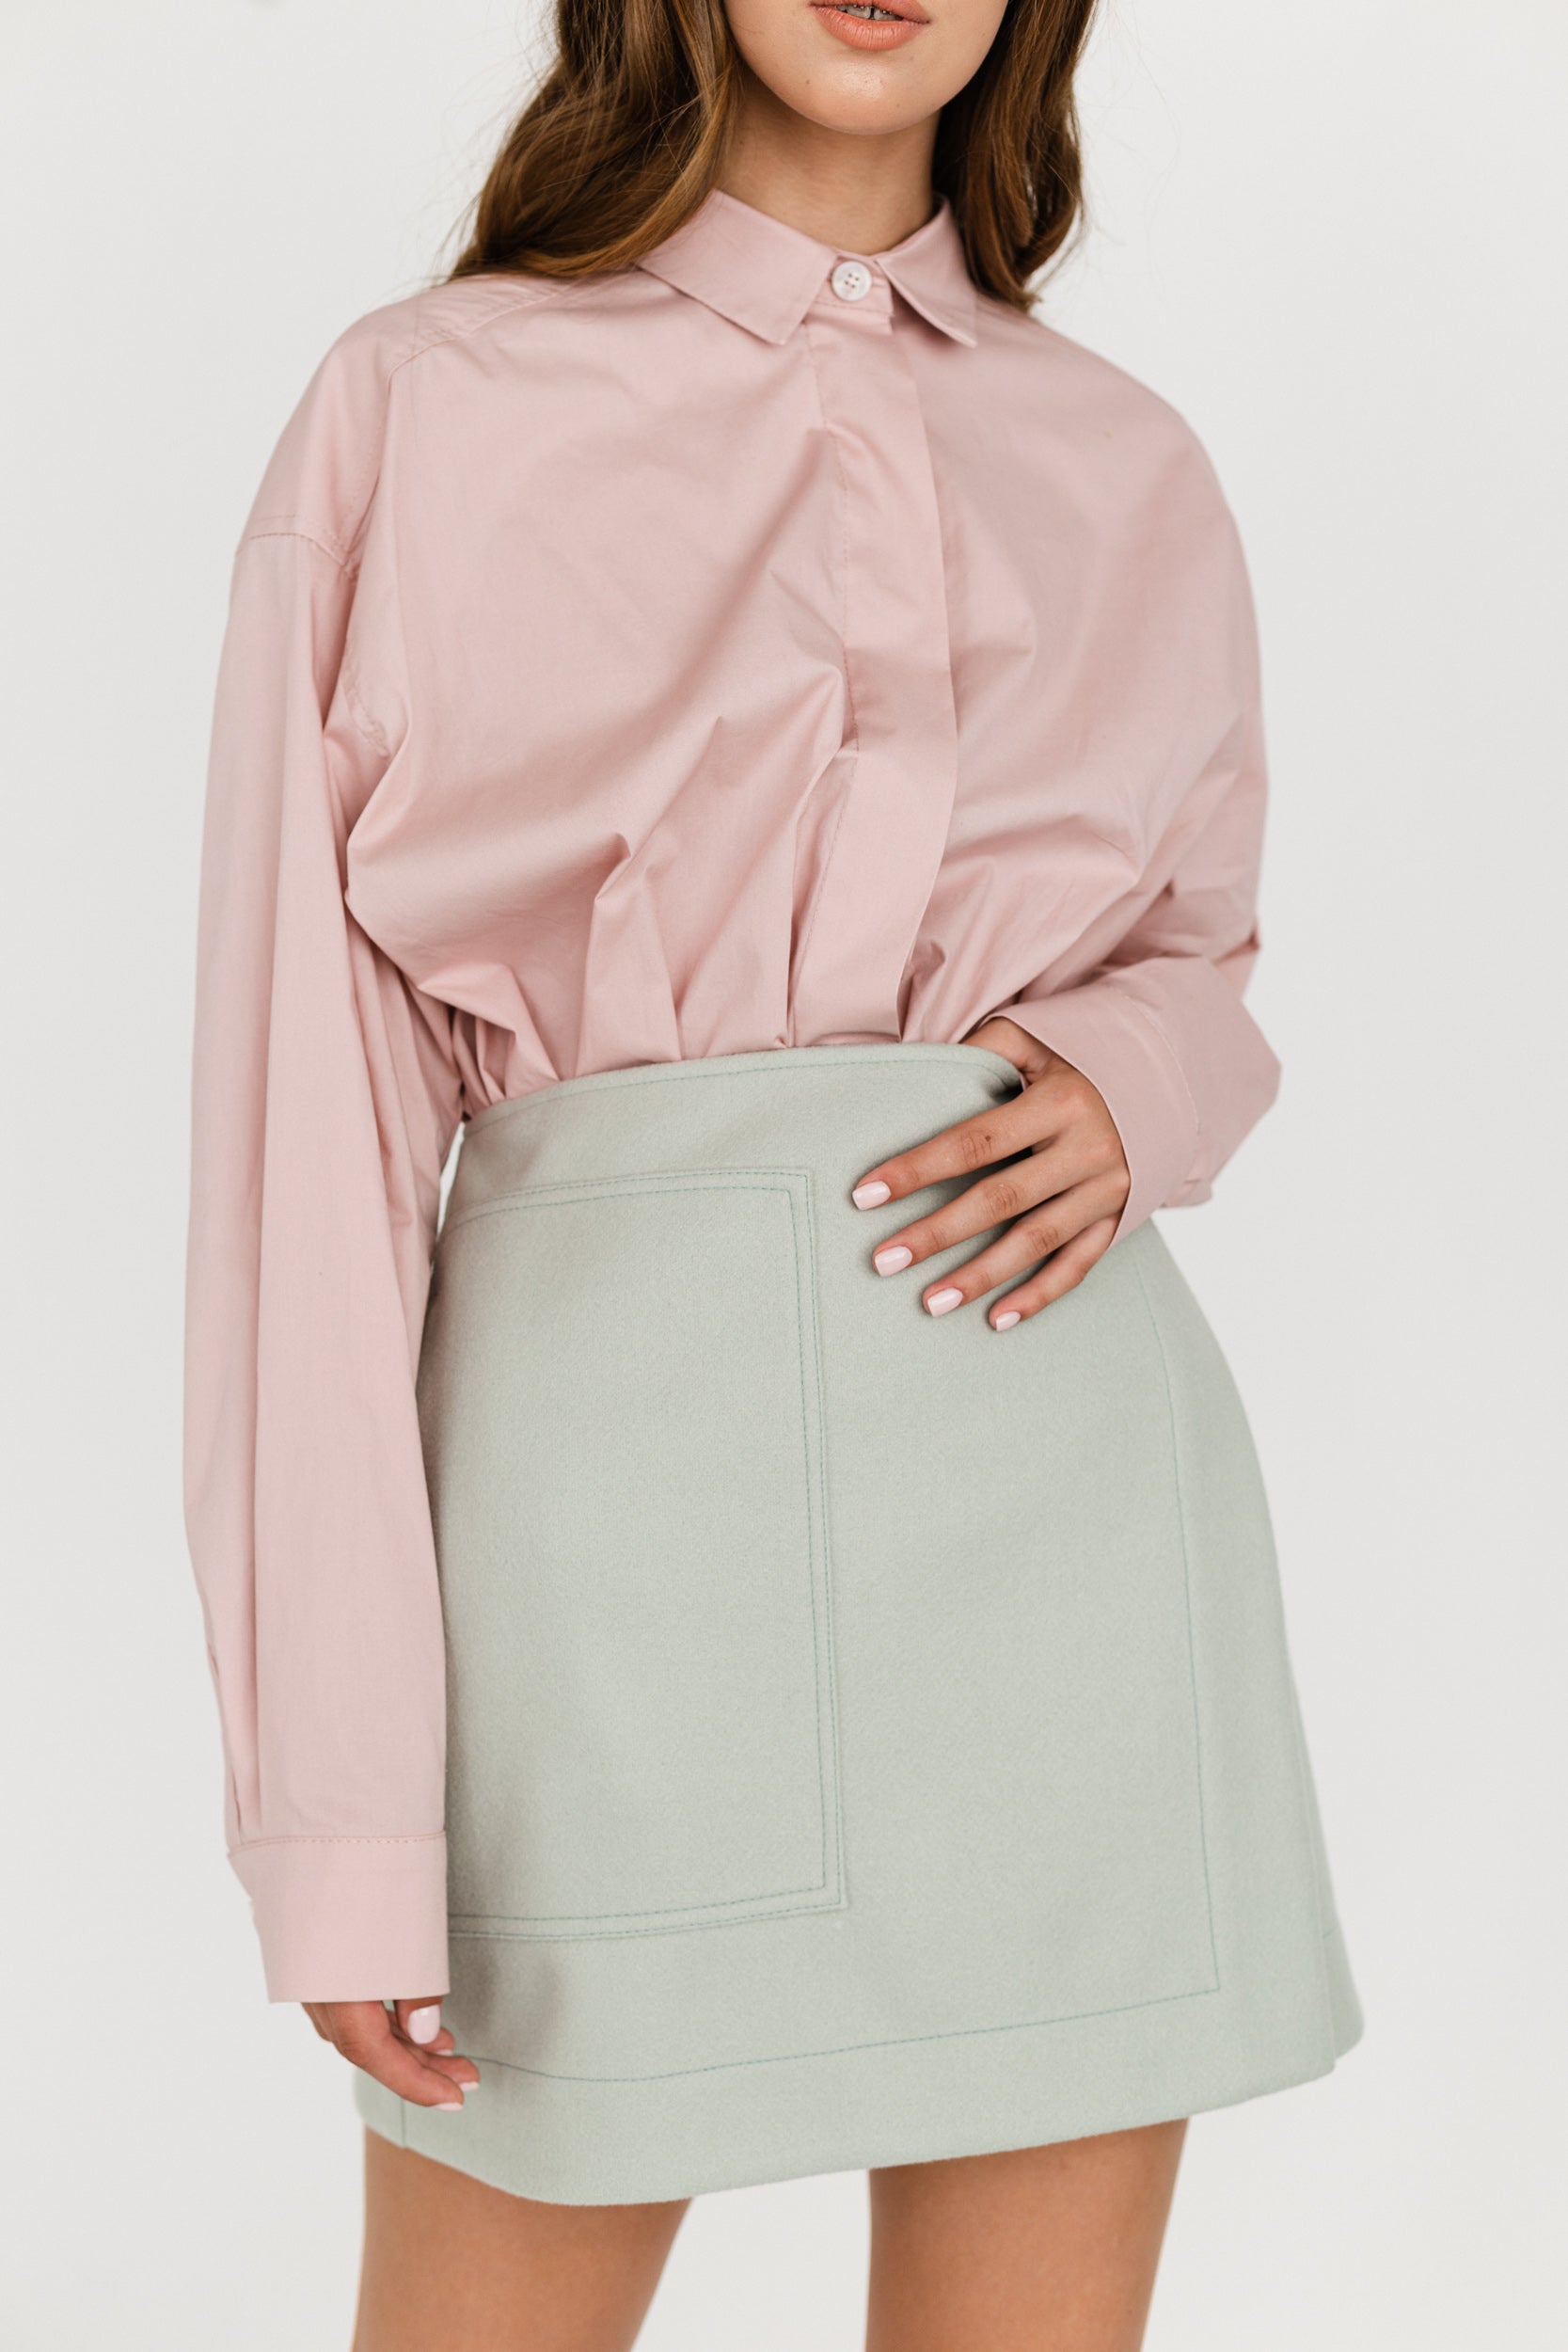 Mint Woolen Skirt